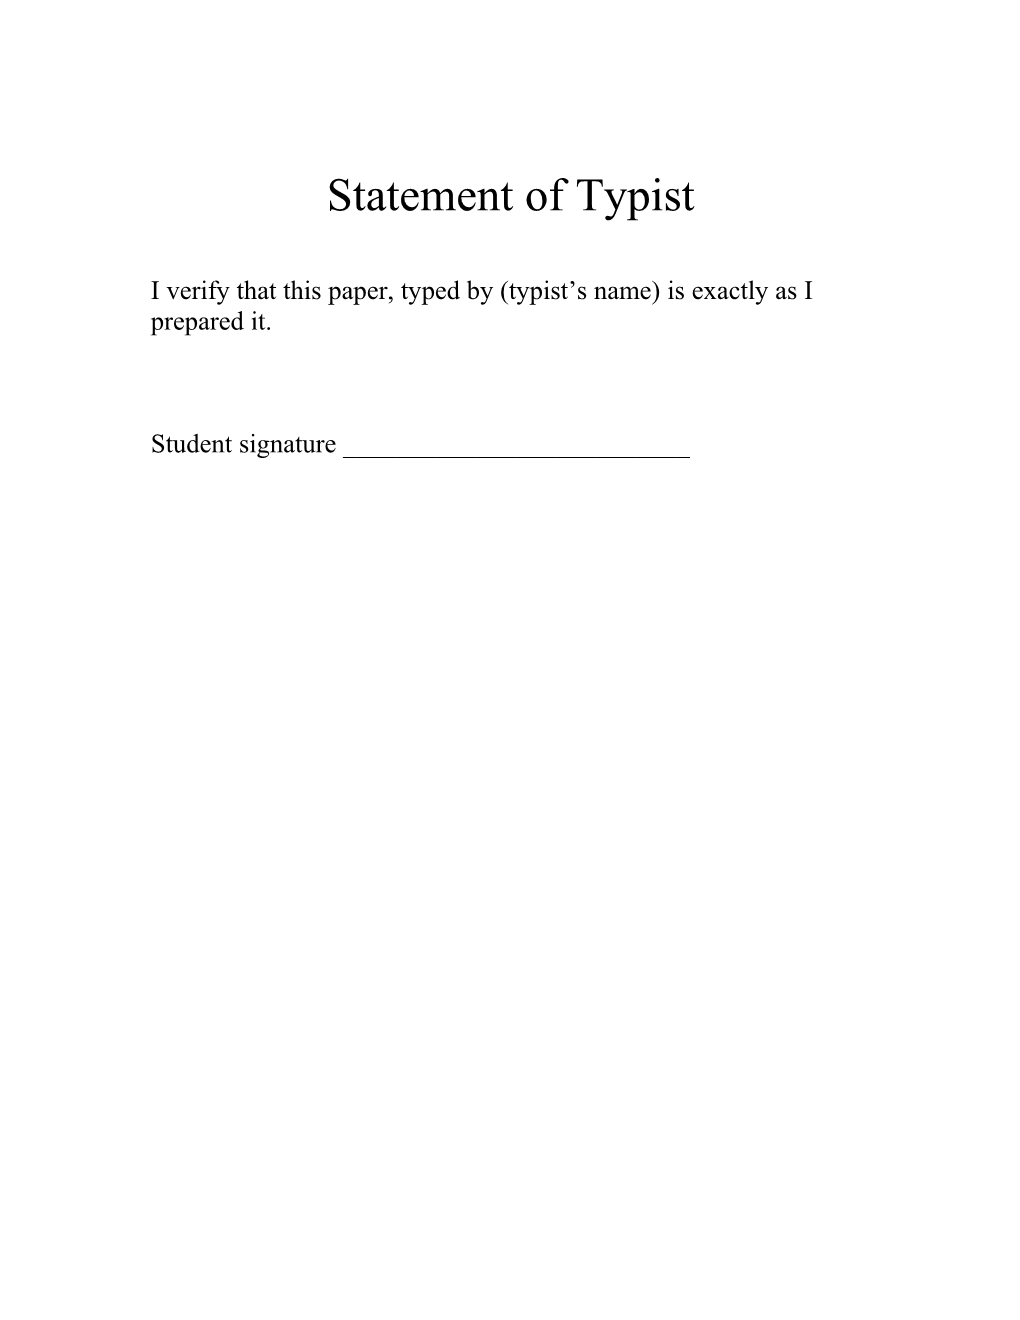 Statement of Typist